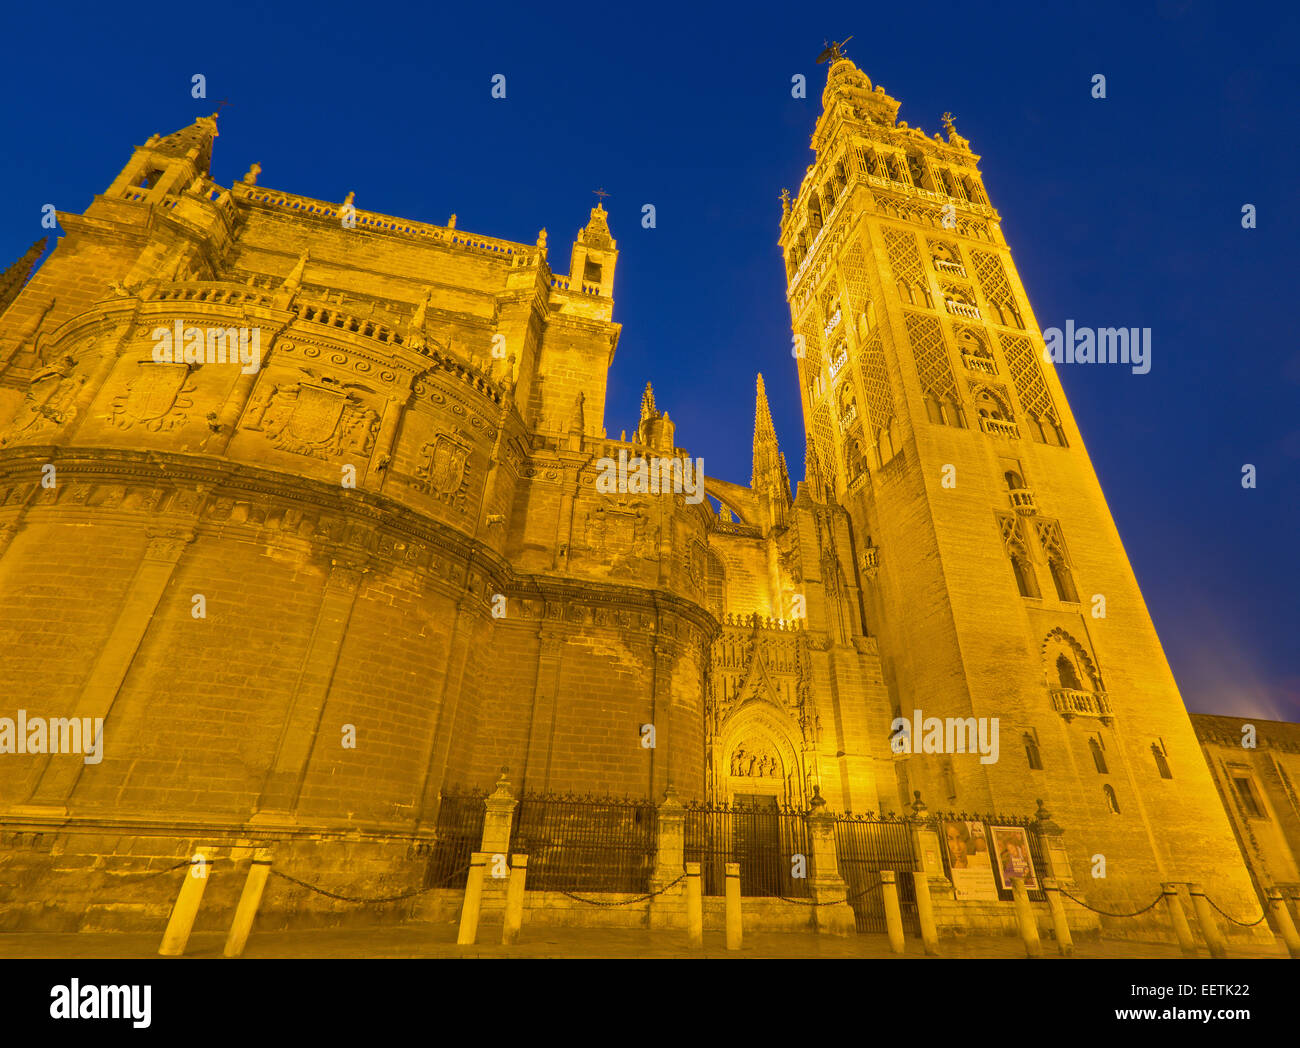 Sevilla, España - 28 de octubre de 2014: la Catedral de Santa María de la Sede con la Giralda en el crepúsculo matutino. Foto de stock